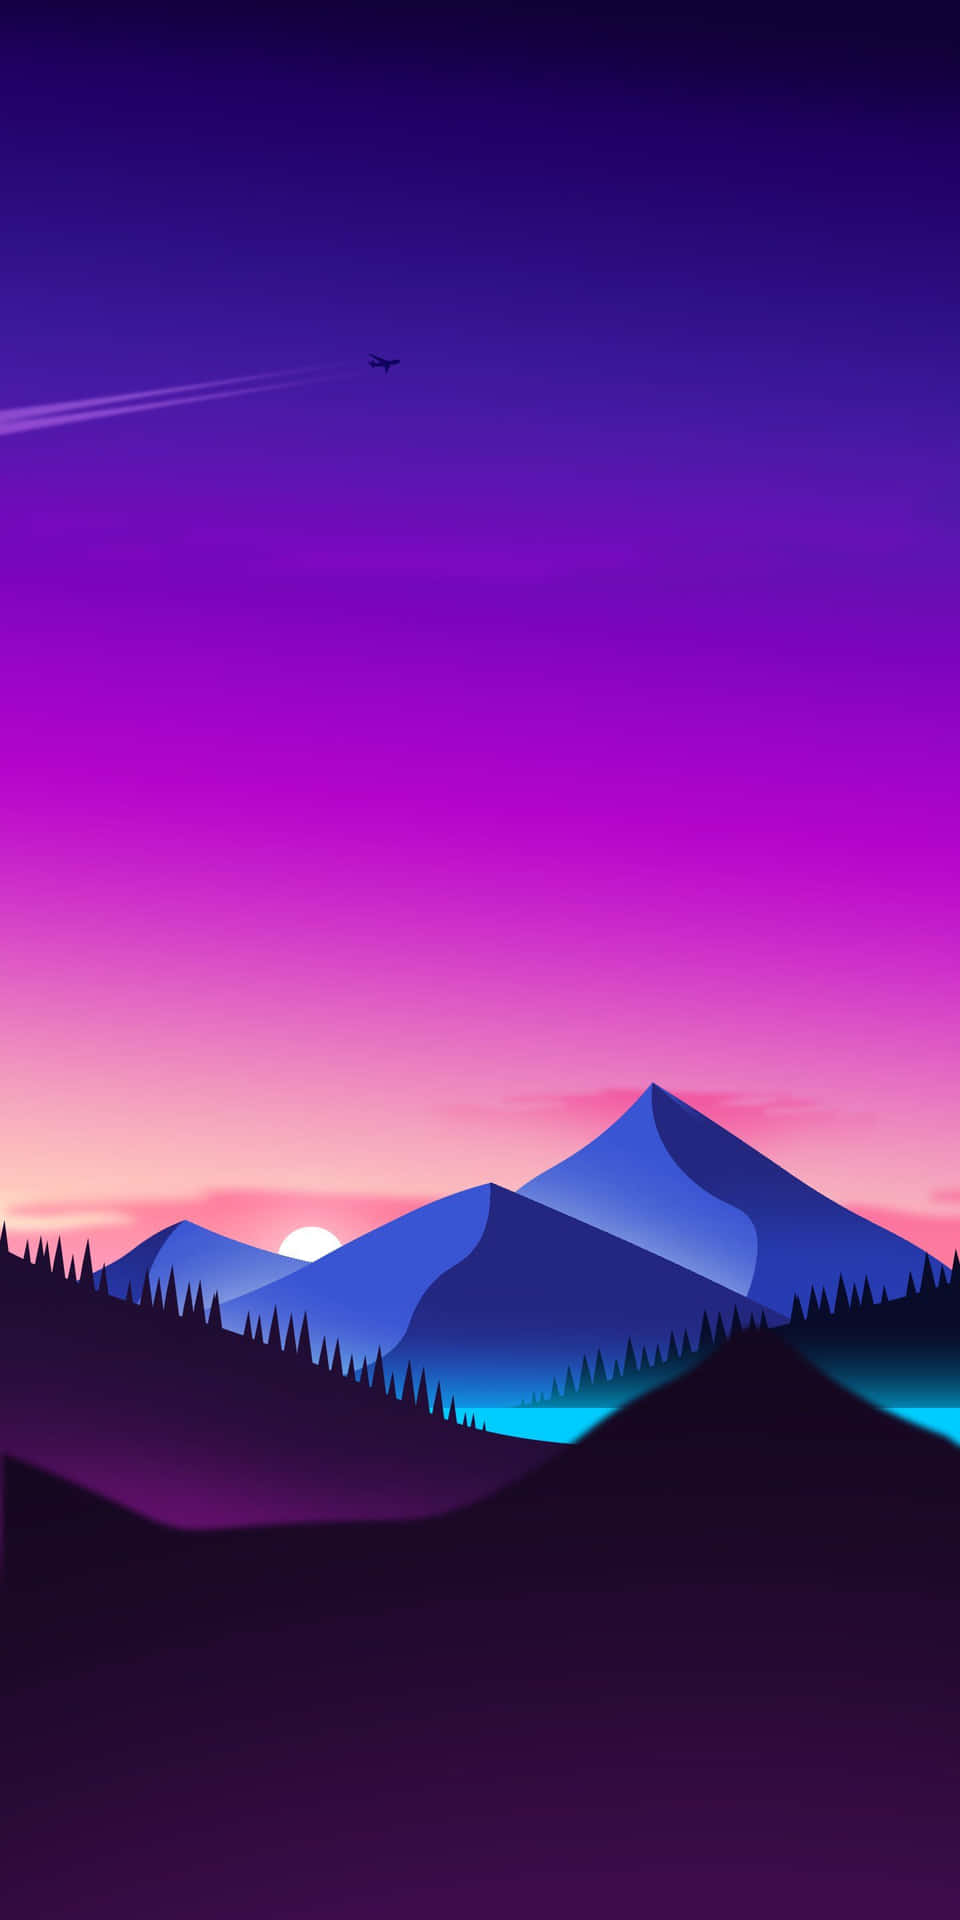 Stunning Blue Mountains Landscape Wallpaper